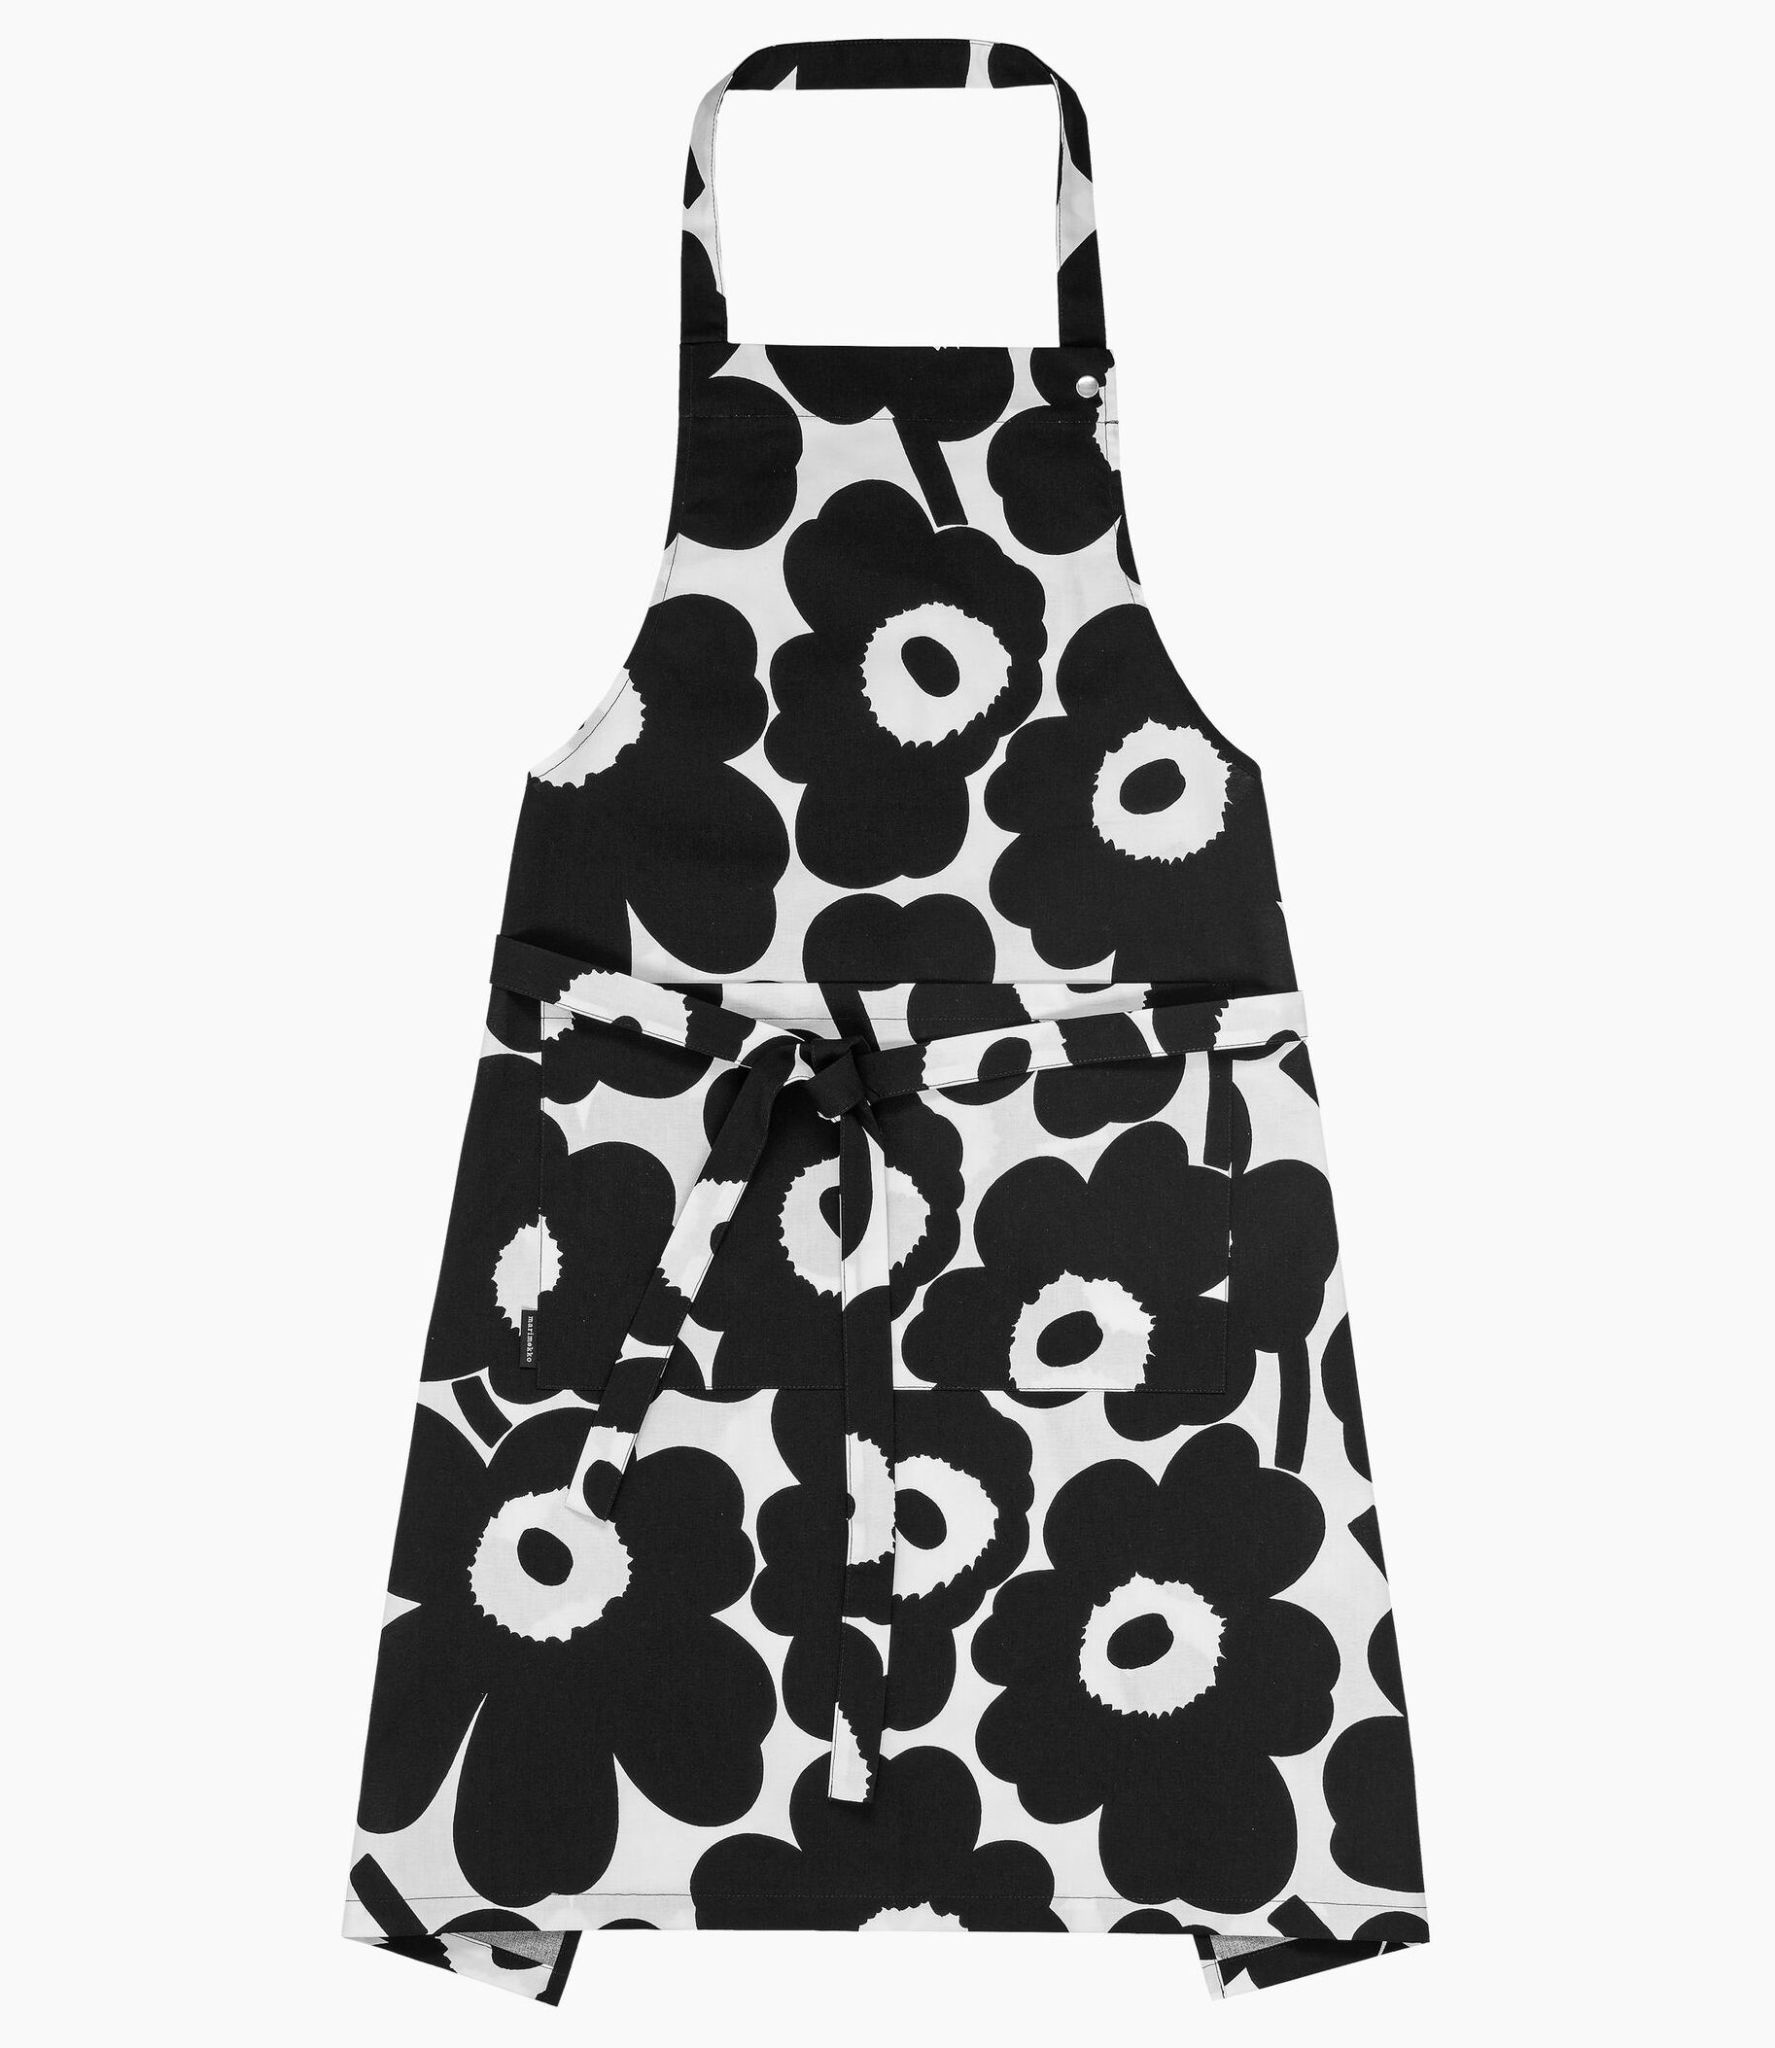 Marimekko Unikko kitchen apron - Fins design! - blikfang